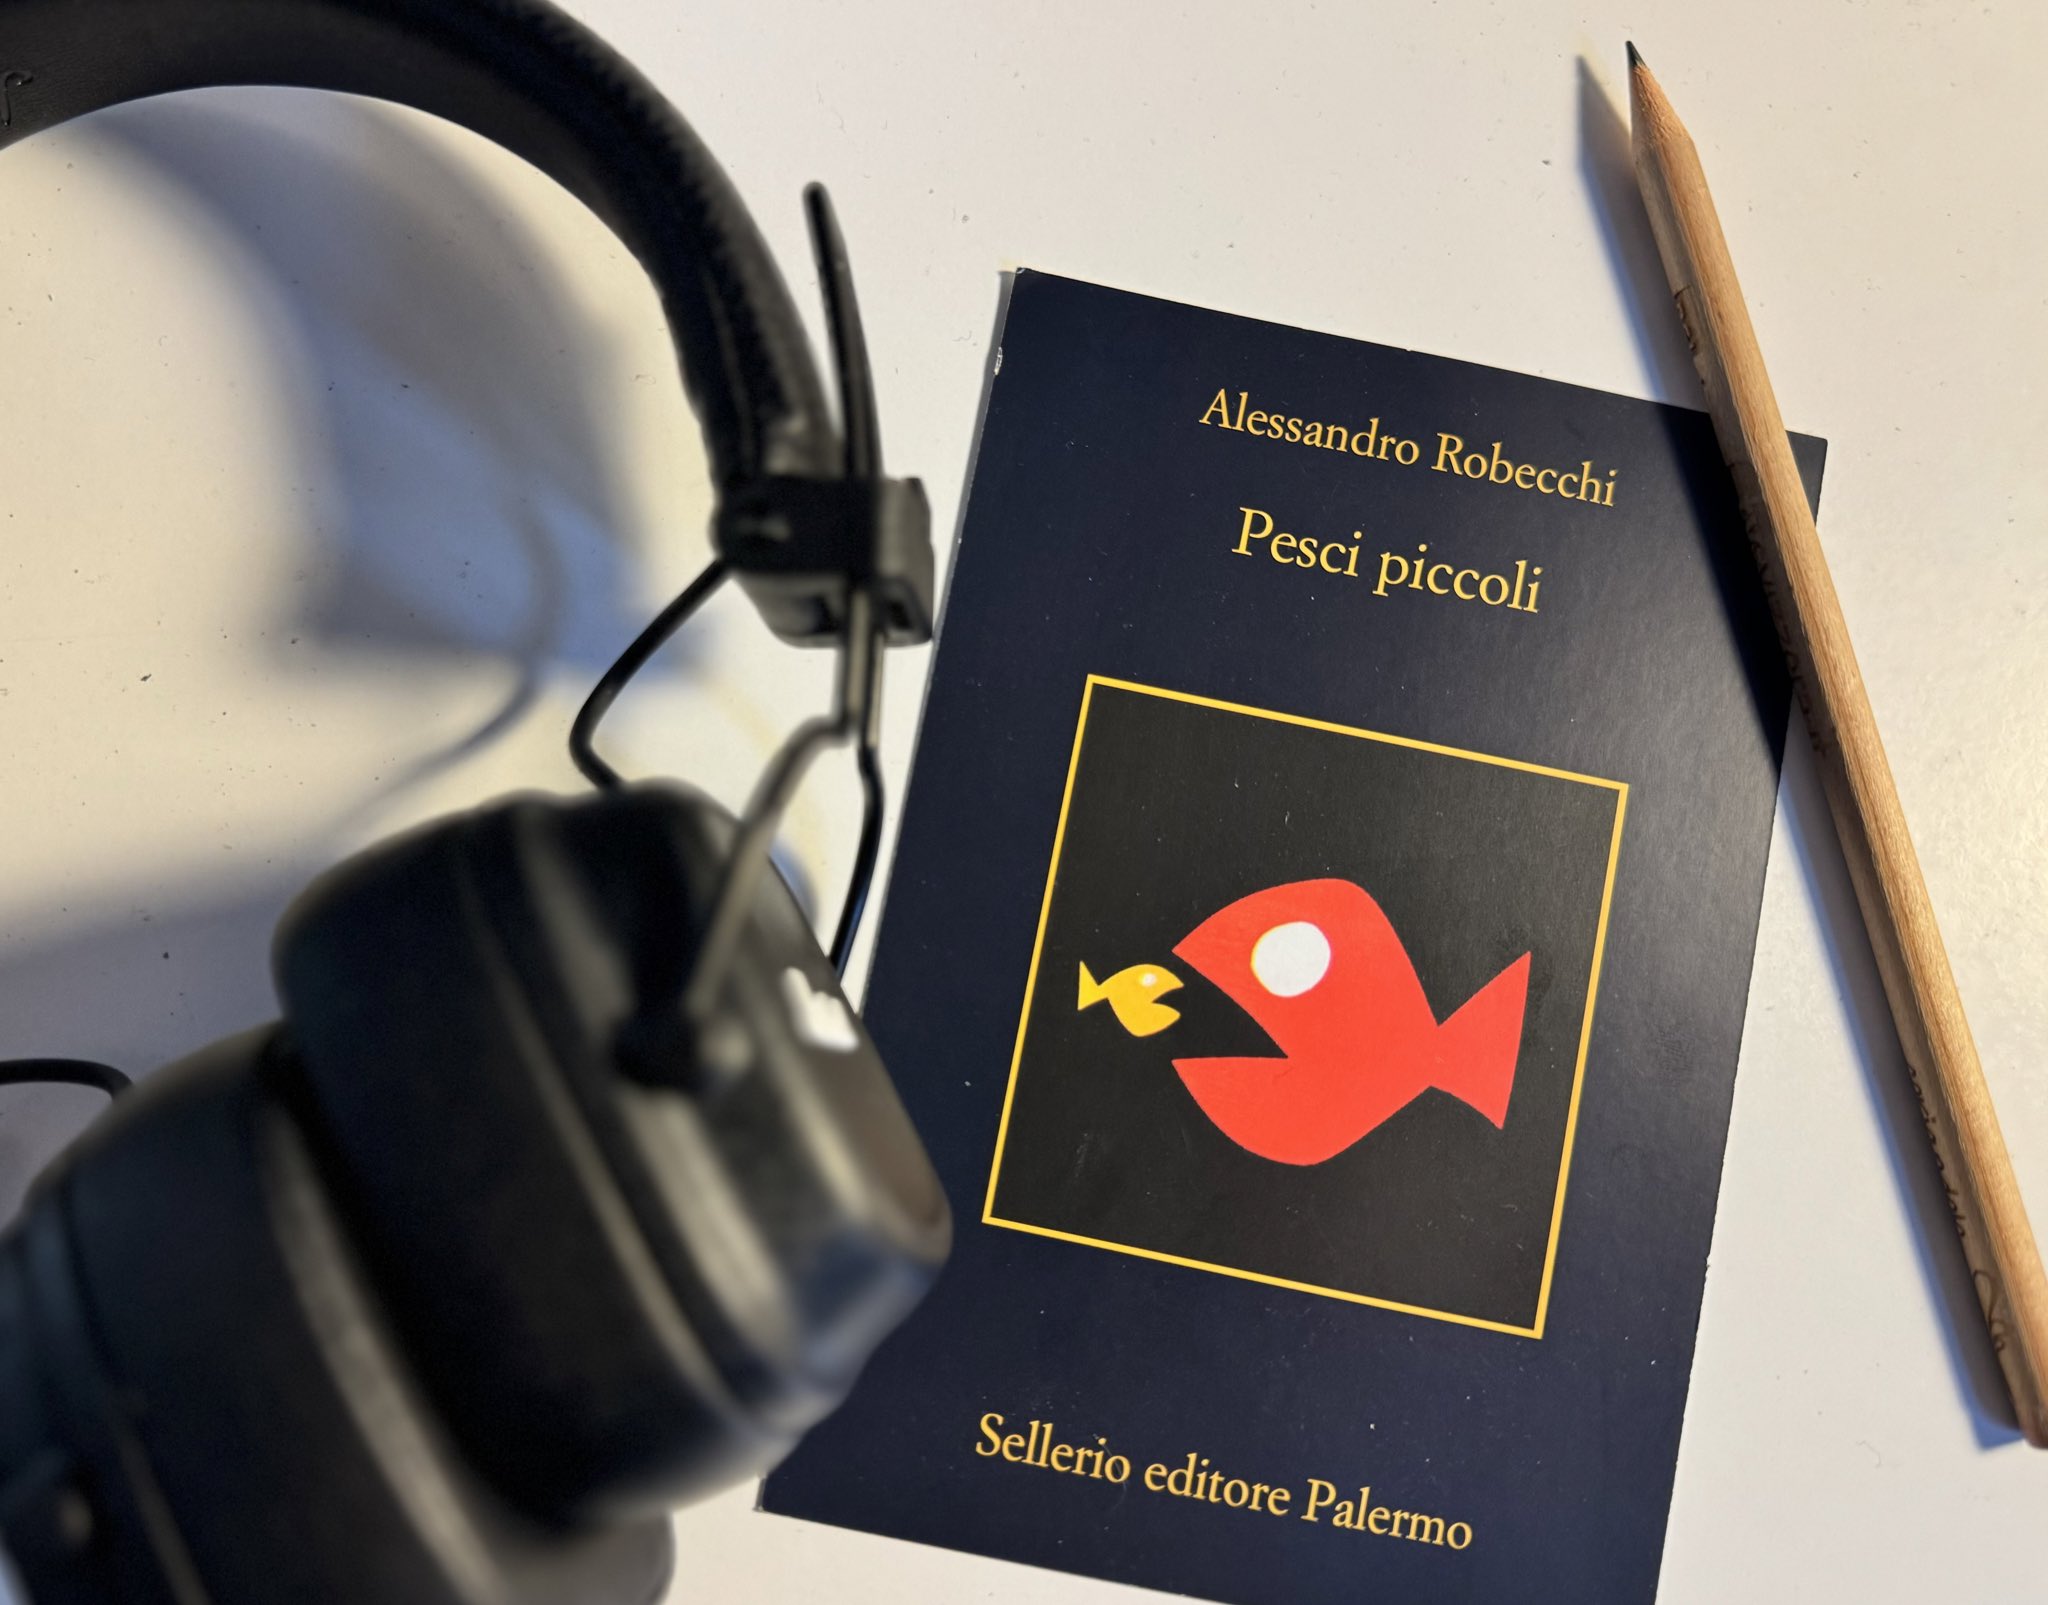 Alessandro Robecchi on X: Pesci piccoli, il nuovo romanzo. Dal 23